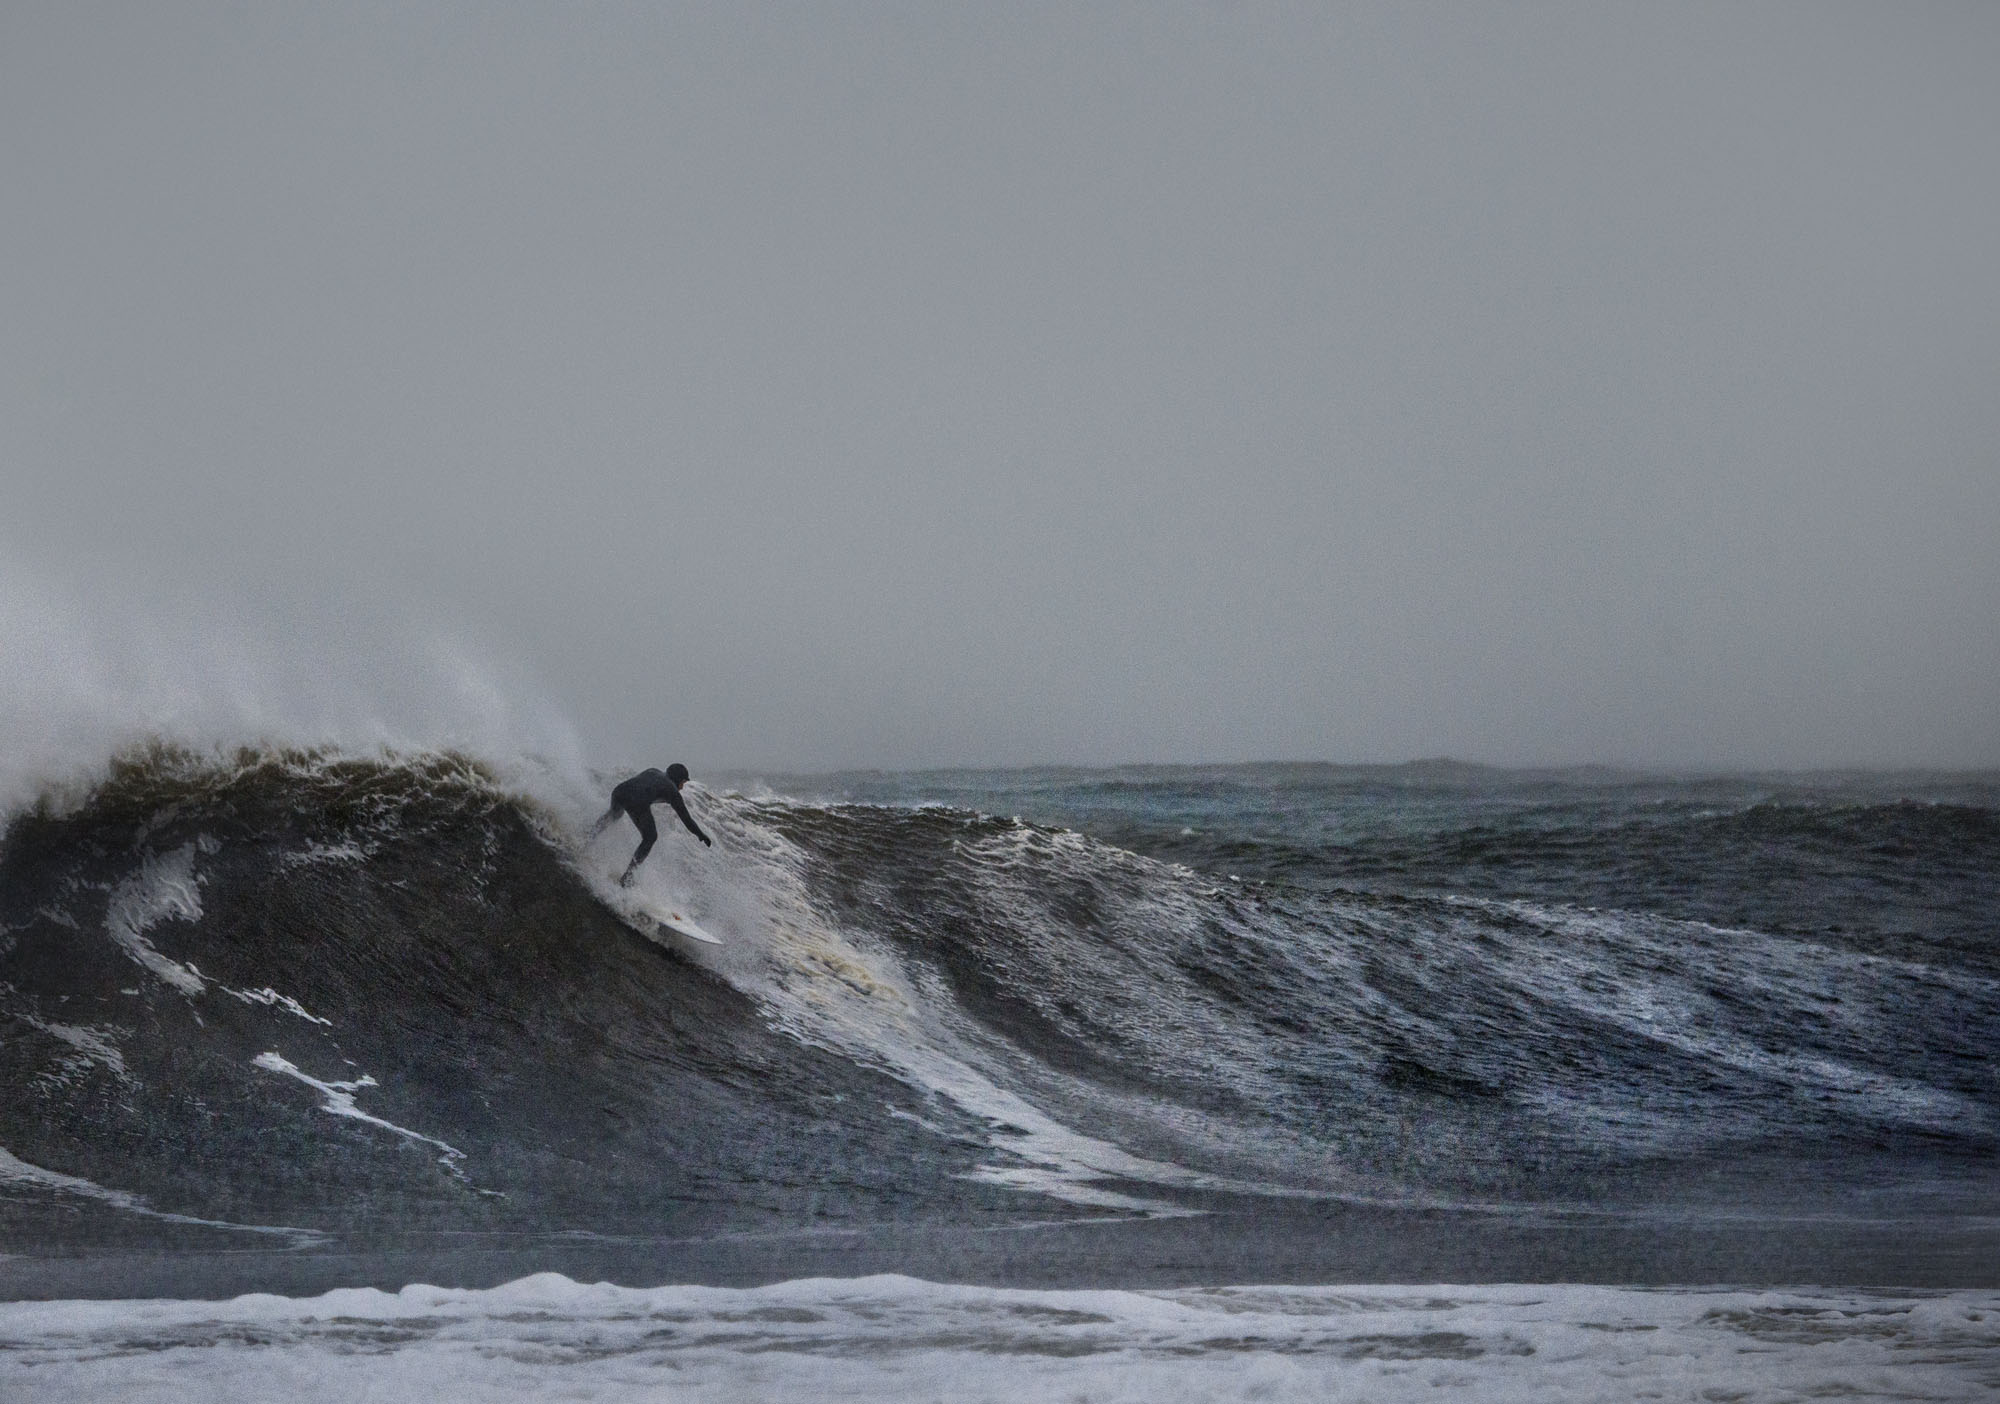 Nor’Easter, December 9, 2014, Rockaway Beach, NY, Surfer: Tony Farmer